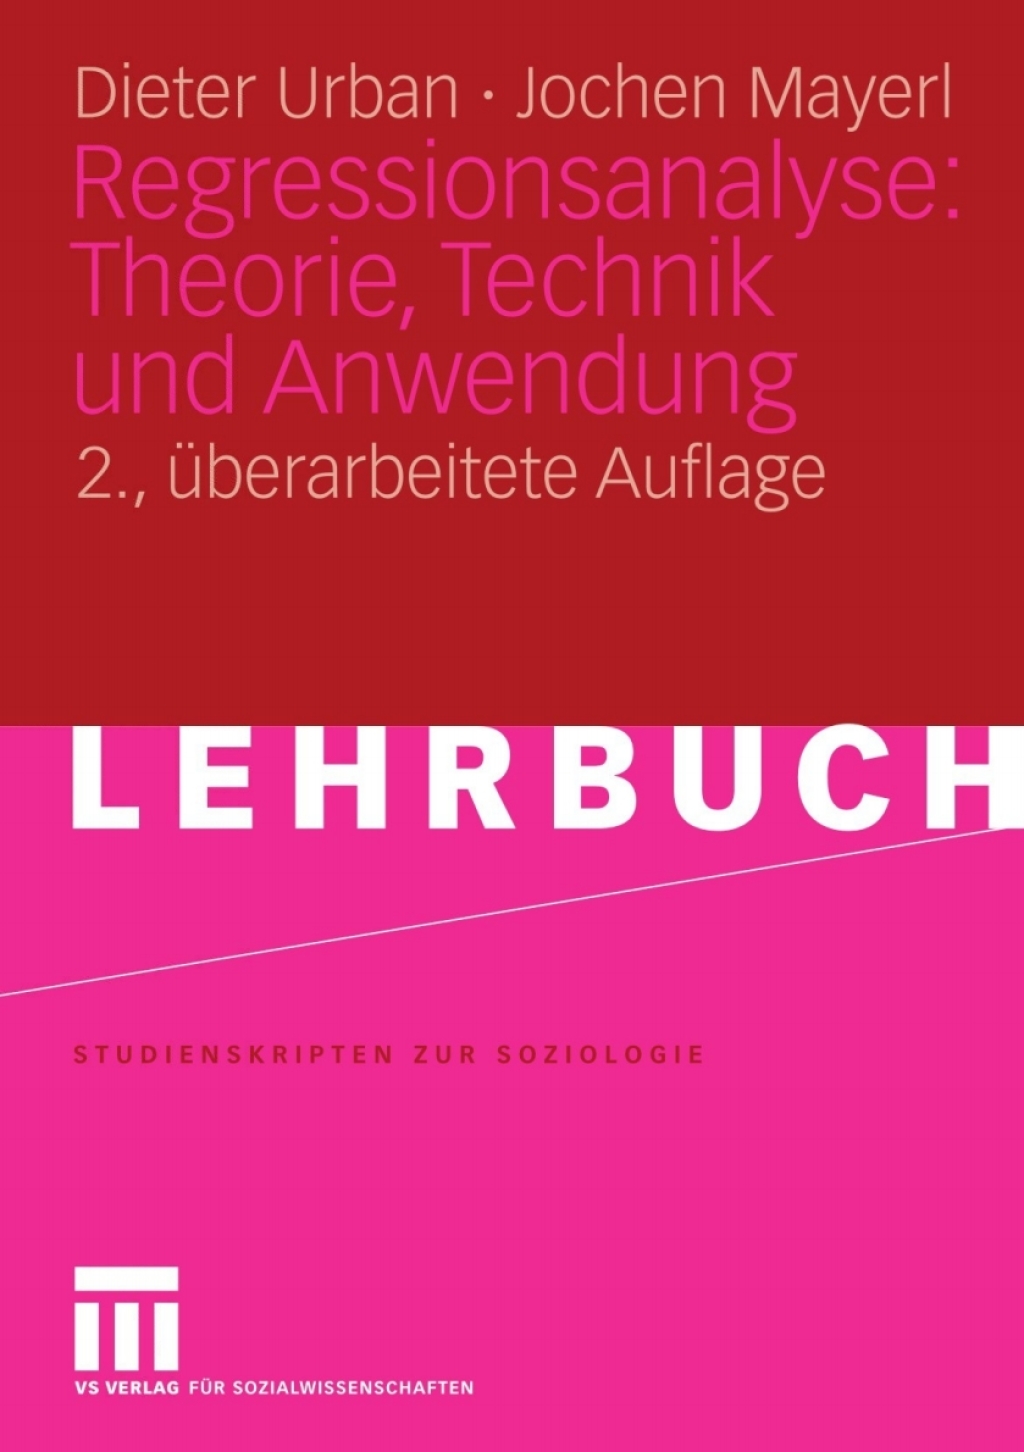 Regressionsanalyse: Theorie  Technik und Anwendung. - 2nd Edition (eBook)